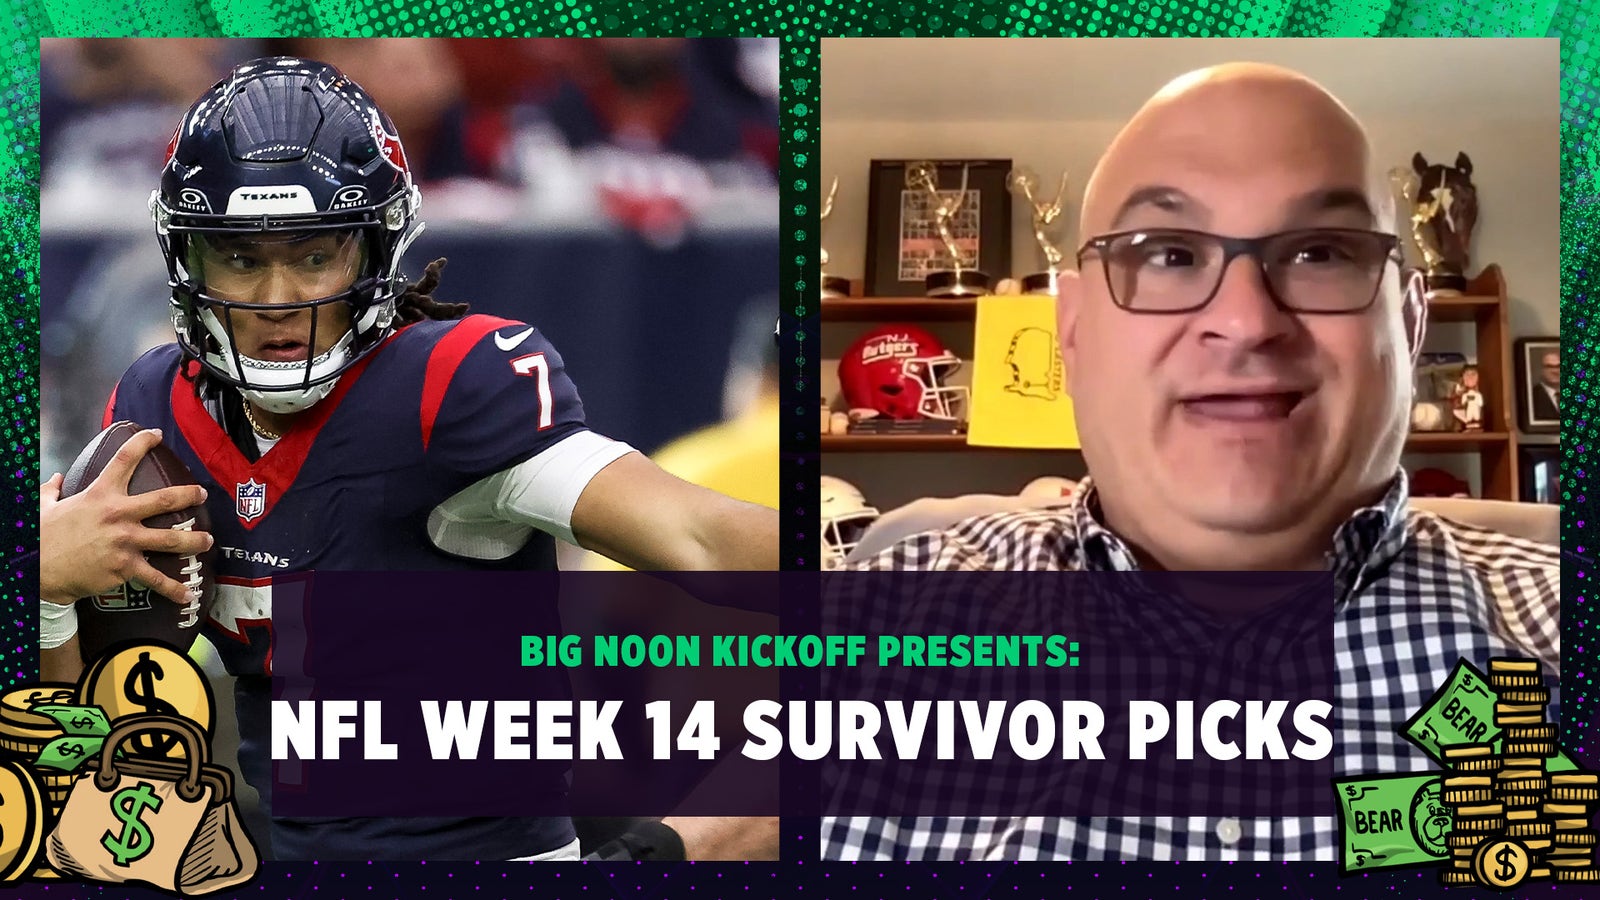 NFL Week 14 Survivor Picks: Steelers, Saints, Texans or Packers?